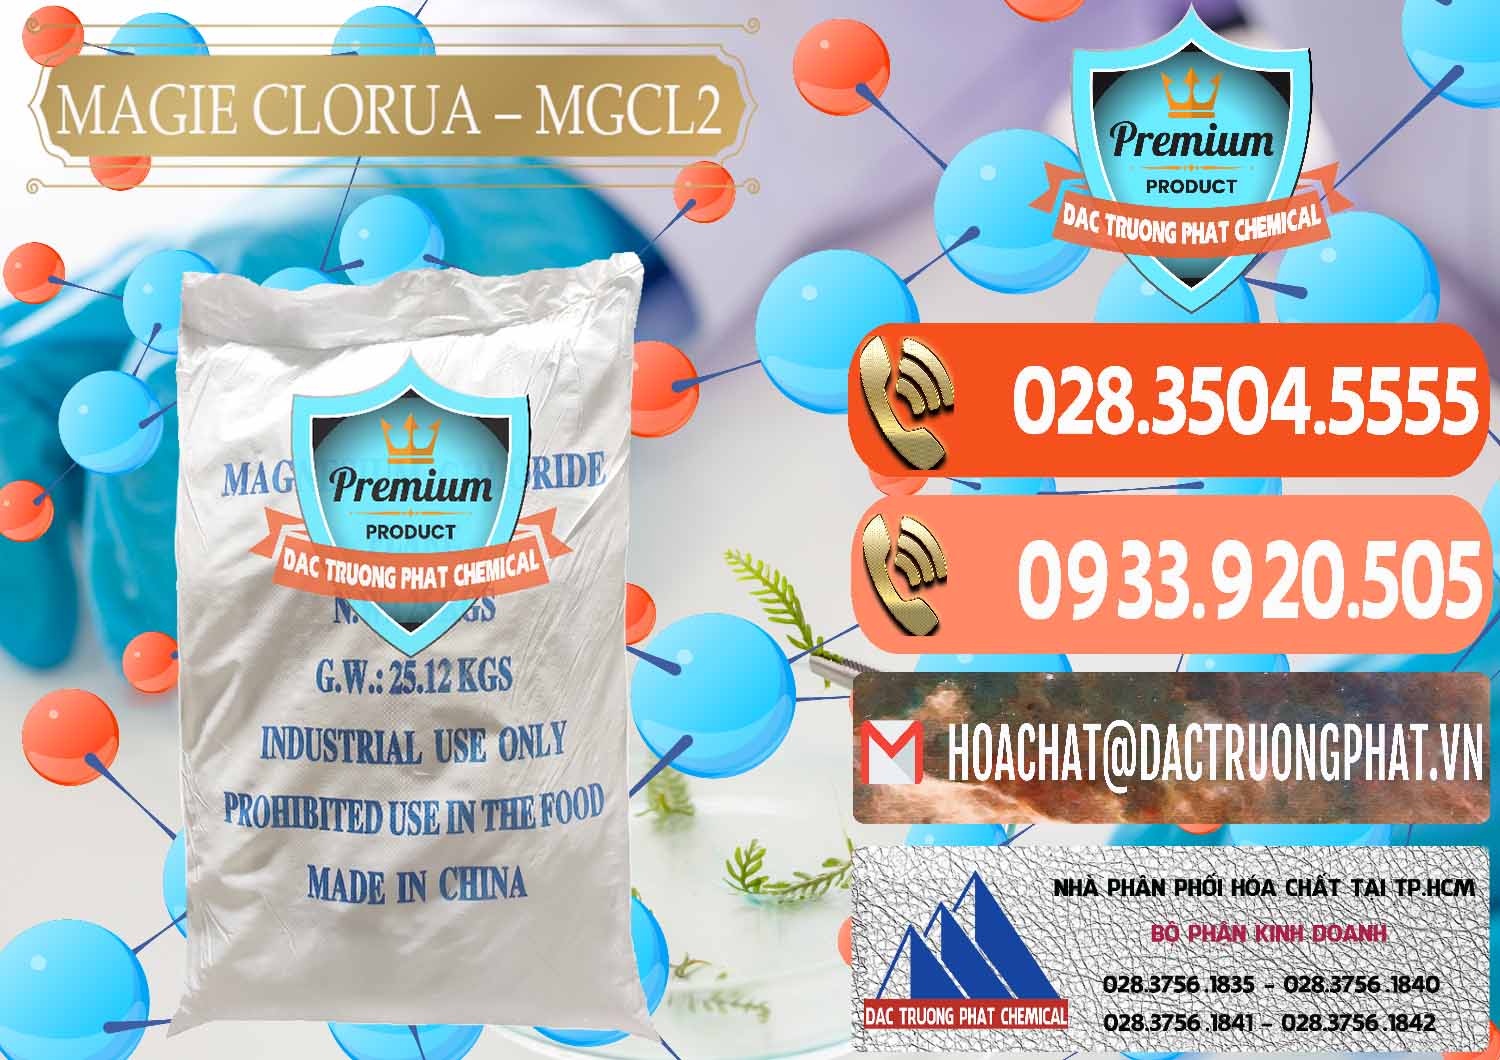 Công ty chuyên cung cấp và bán Magie Clorua – MGCL2 96% Dạng Vảy Trung Quốc China - 0091 - Cung cấp _ phân phối hóa chất tại TP.HCM - hoachatmientay.com